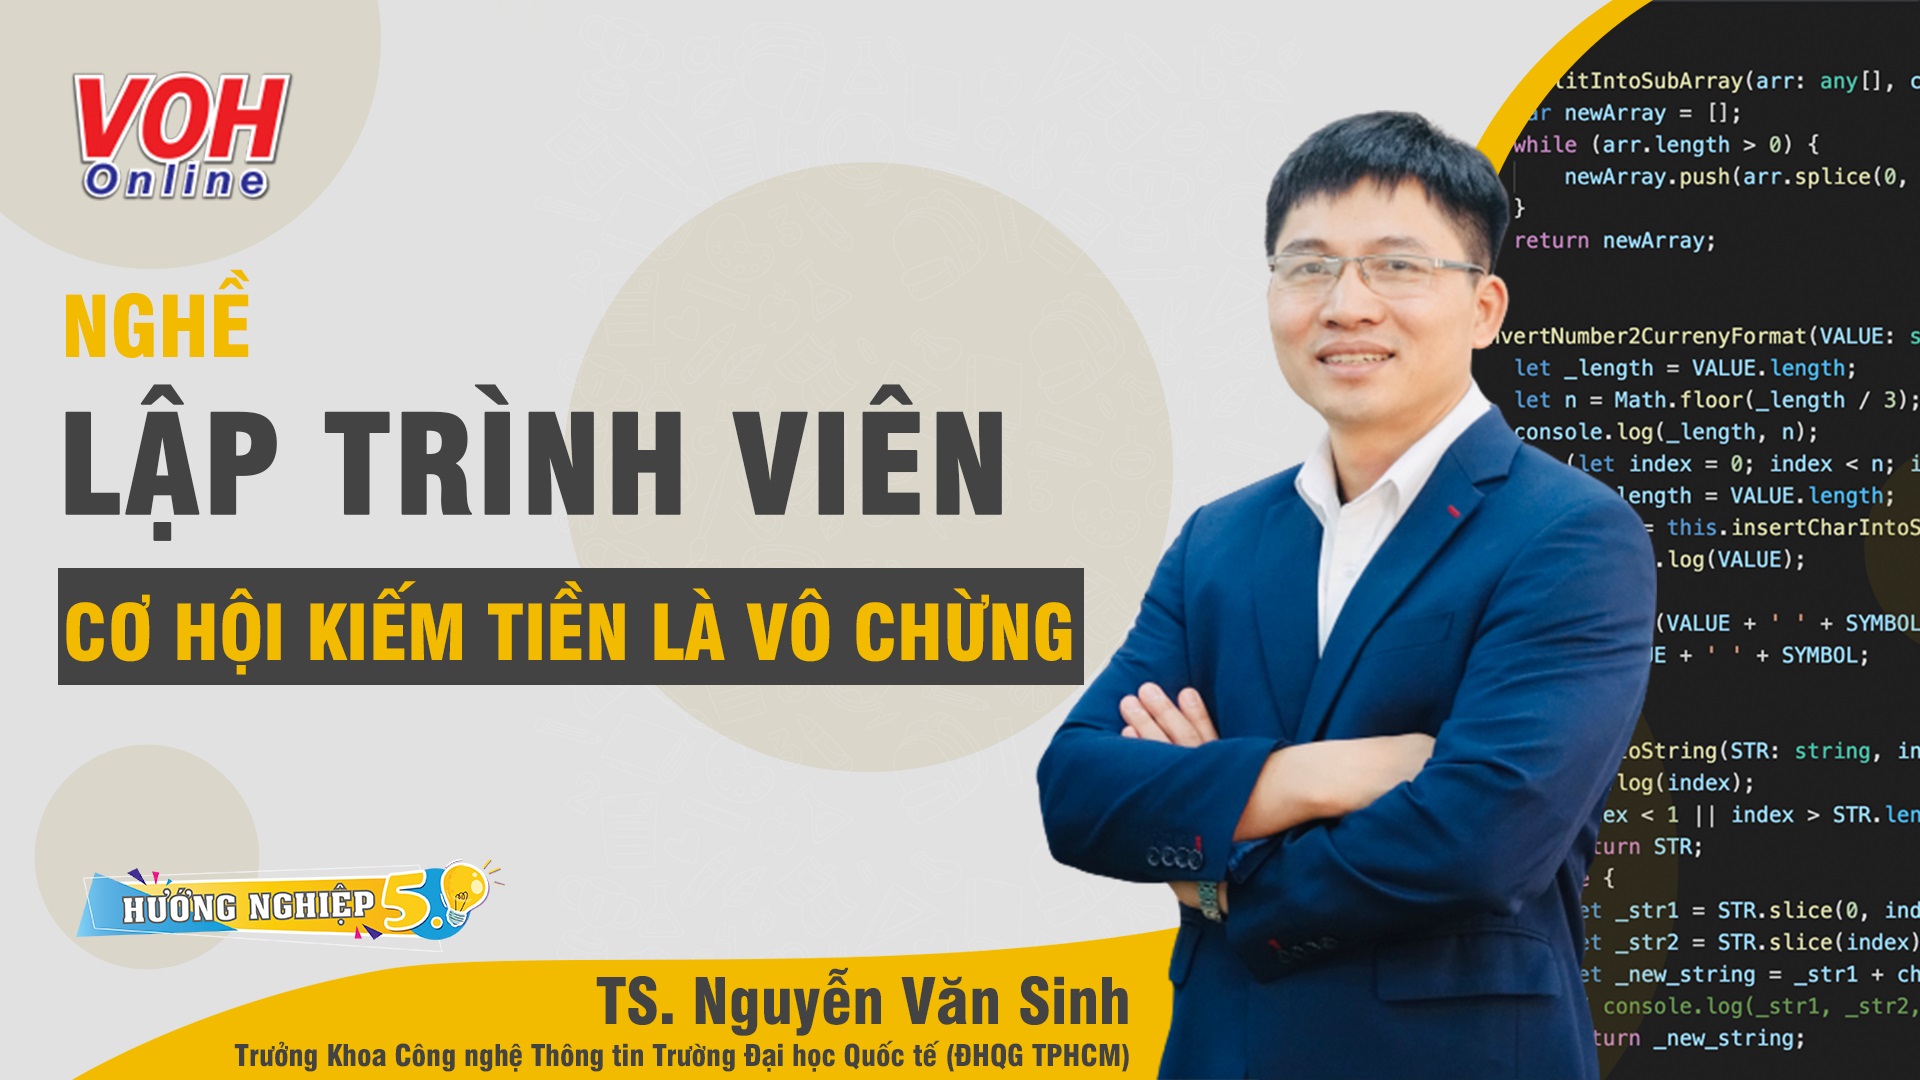 TS. Nguyễn Văn Sinh, Trưởng Khoa, Công nghệ Thông tin, Trường Đại học Quốc tế